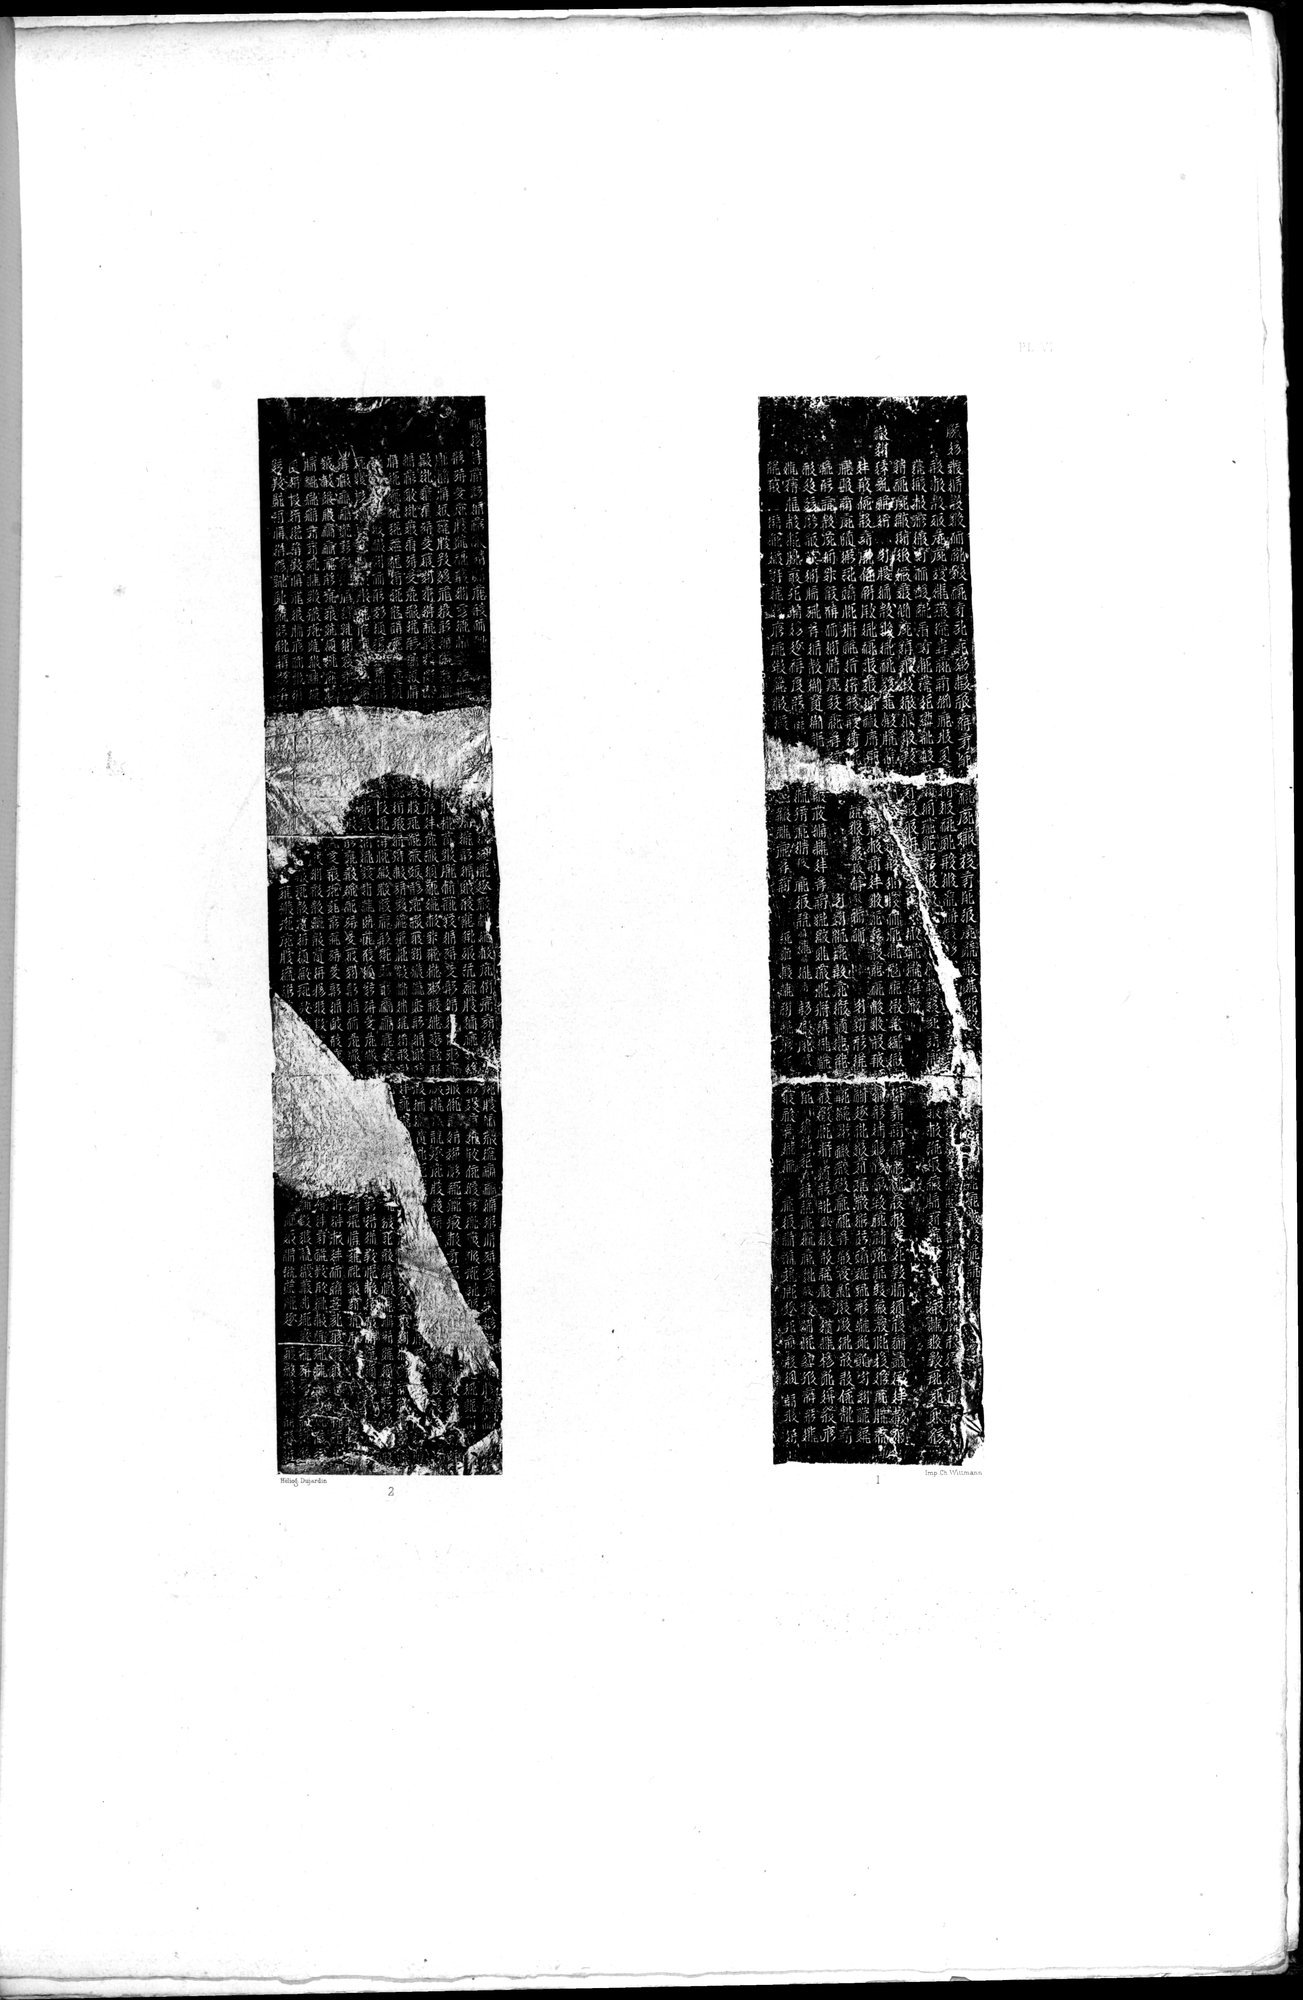 Documente de l'Époque Mongole des XIIIe et XIVe Siècle : vol.1 / Page 29 (Grayscale High Resolution Image)